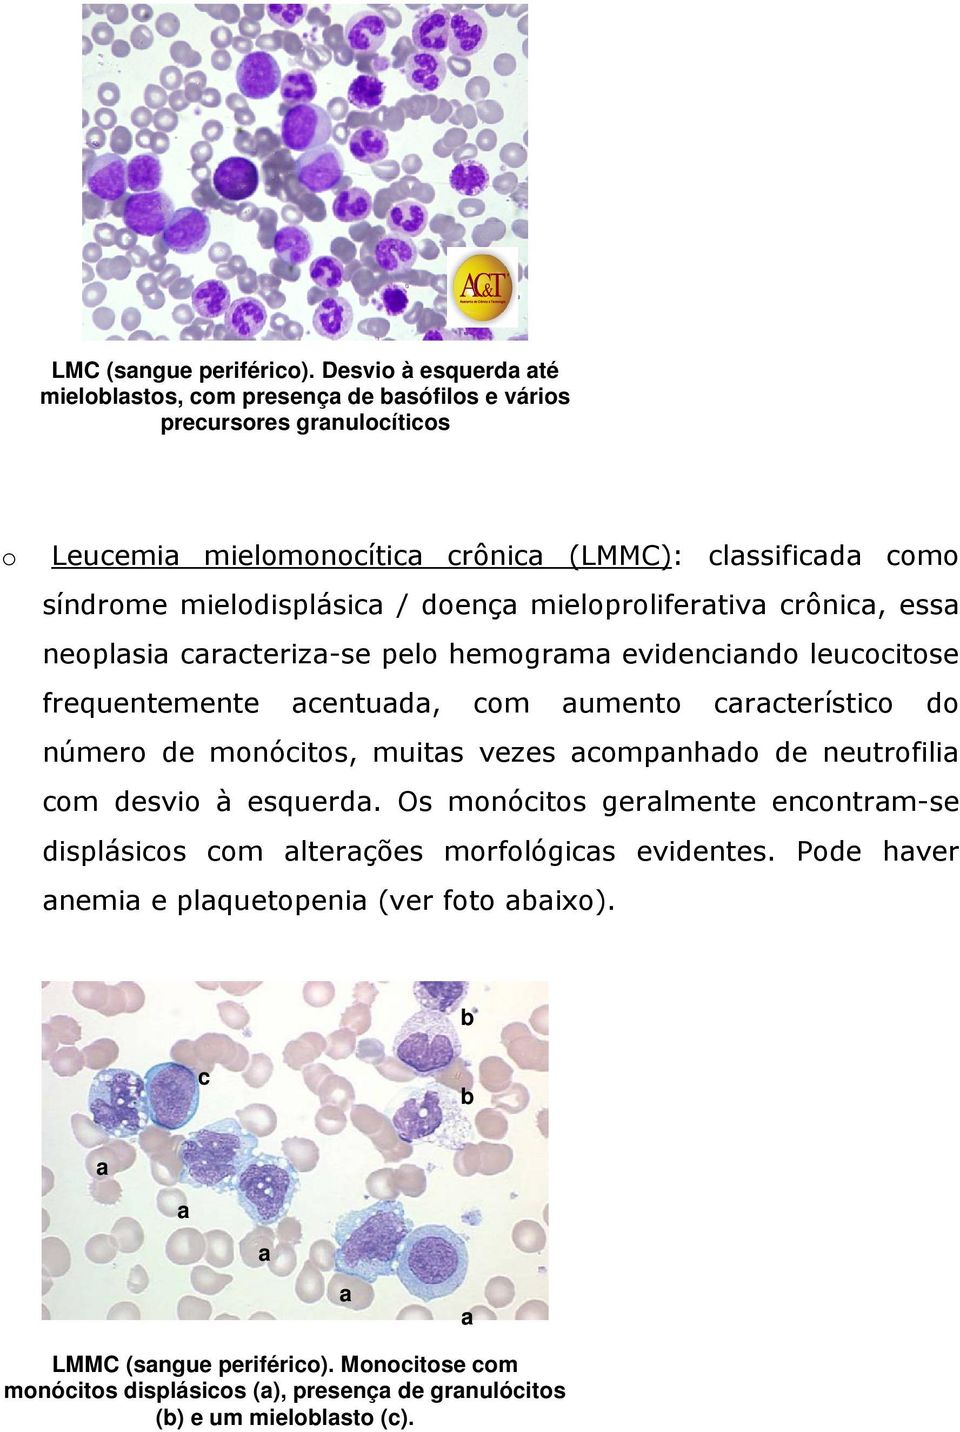 mielodisplásic / doenç mieloprolifertiv crônic, ess neoplsi crcteriz-se pelo hemogrm evidencindo leucocitose frequentemente centud, com umento crcterístico do número